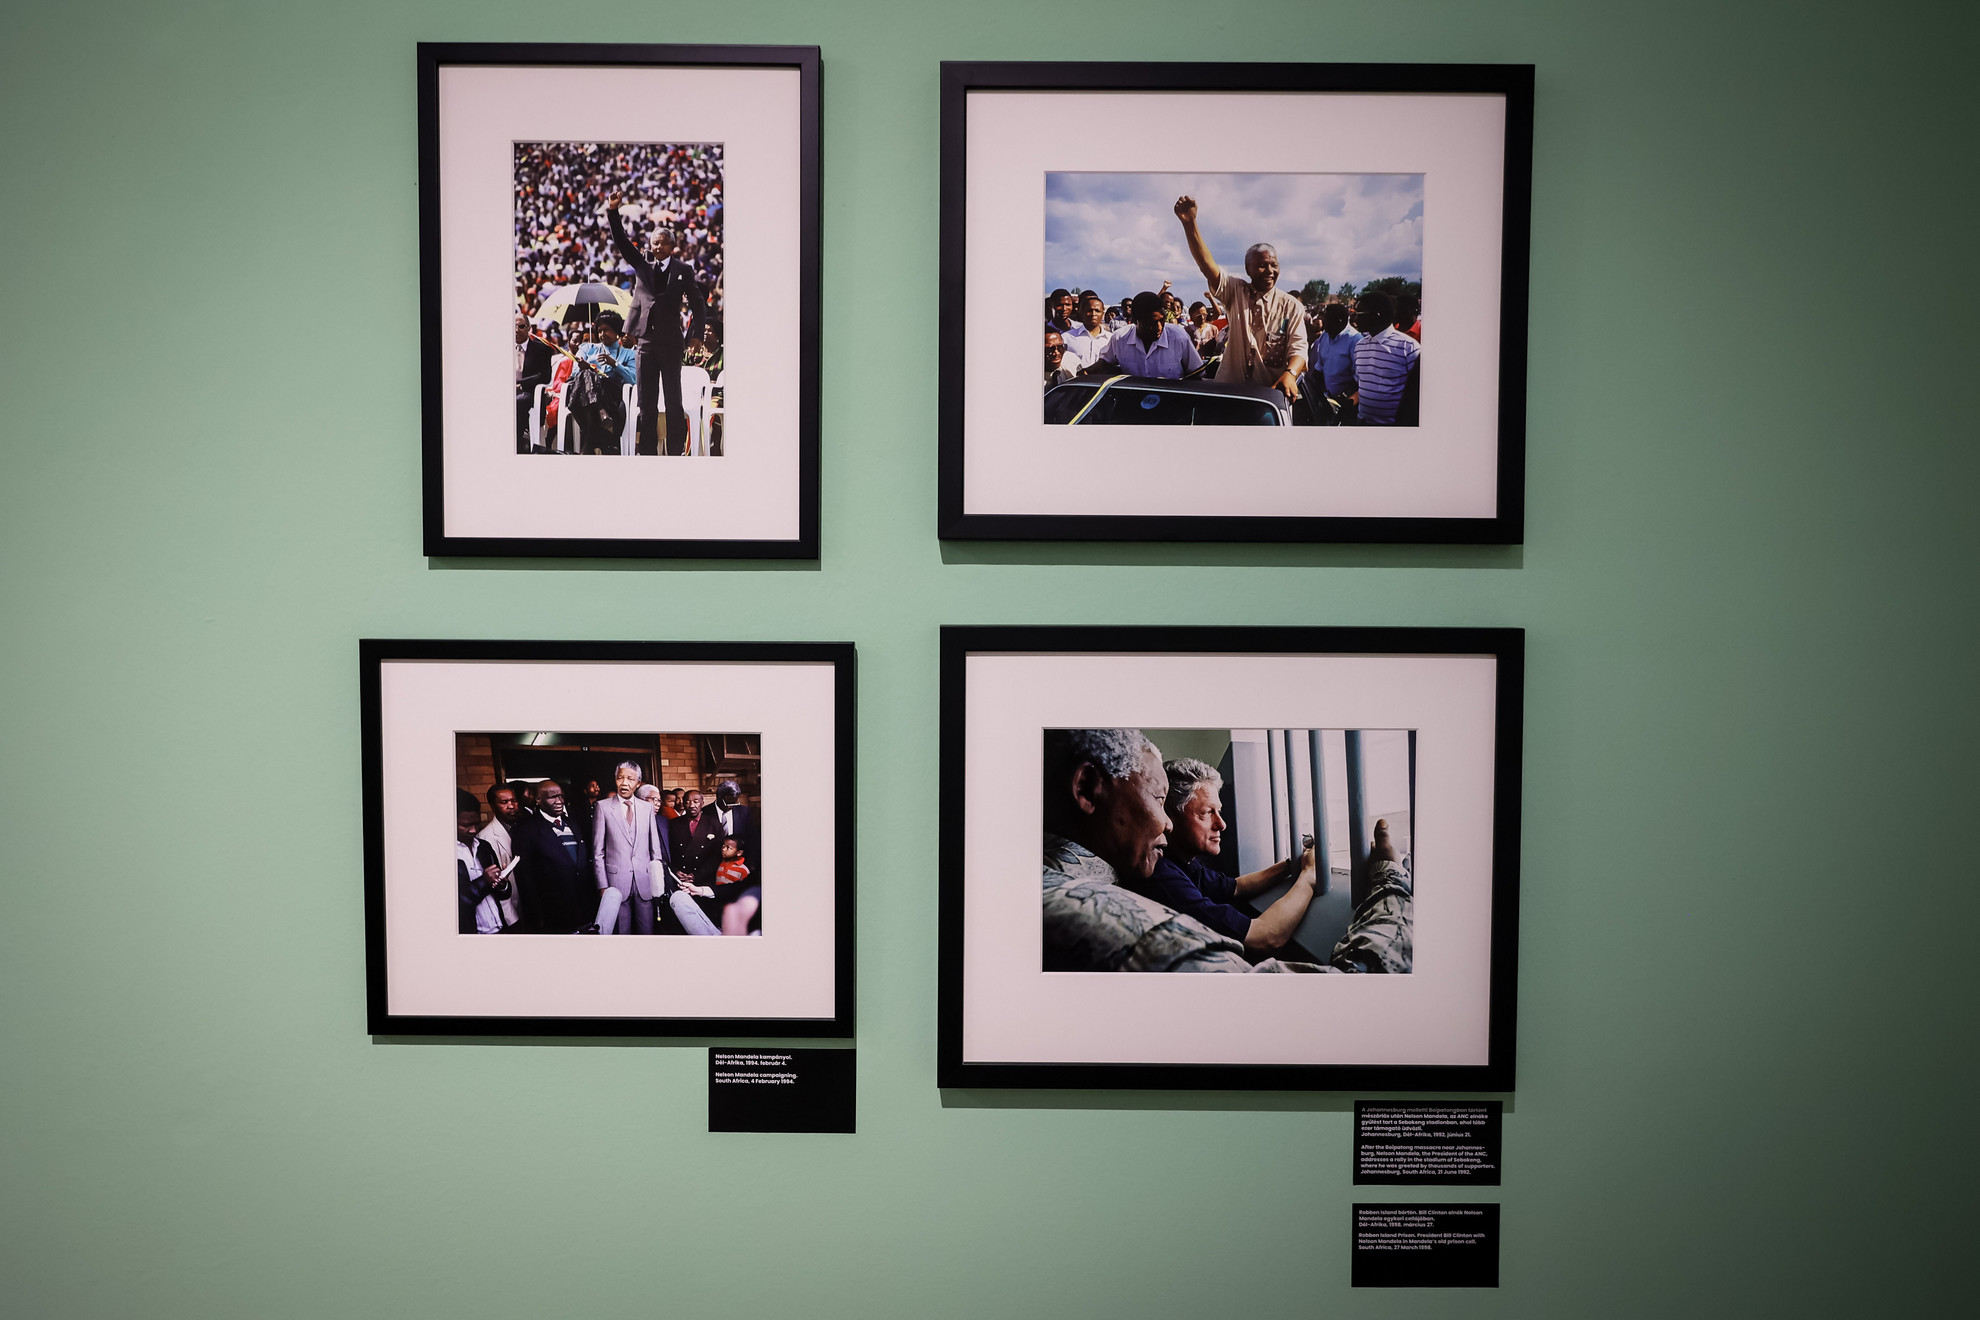 Jobbra lent a híres fotó Mandela és Clinton 1998-as találkozójáról a Robben-szigeten, Mandela egykori cellájában. Ezt a beállítást sokan koppintották